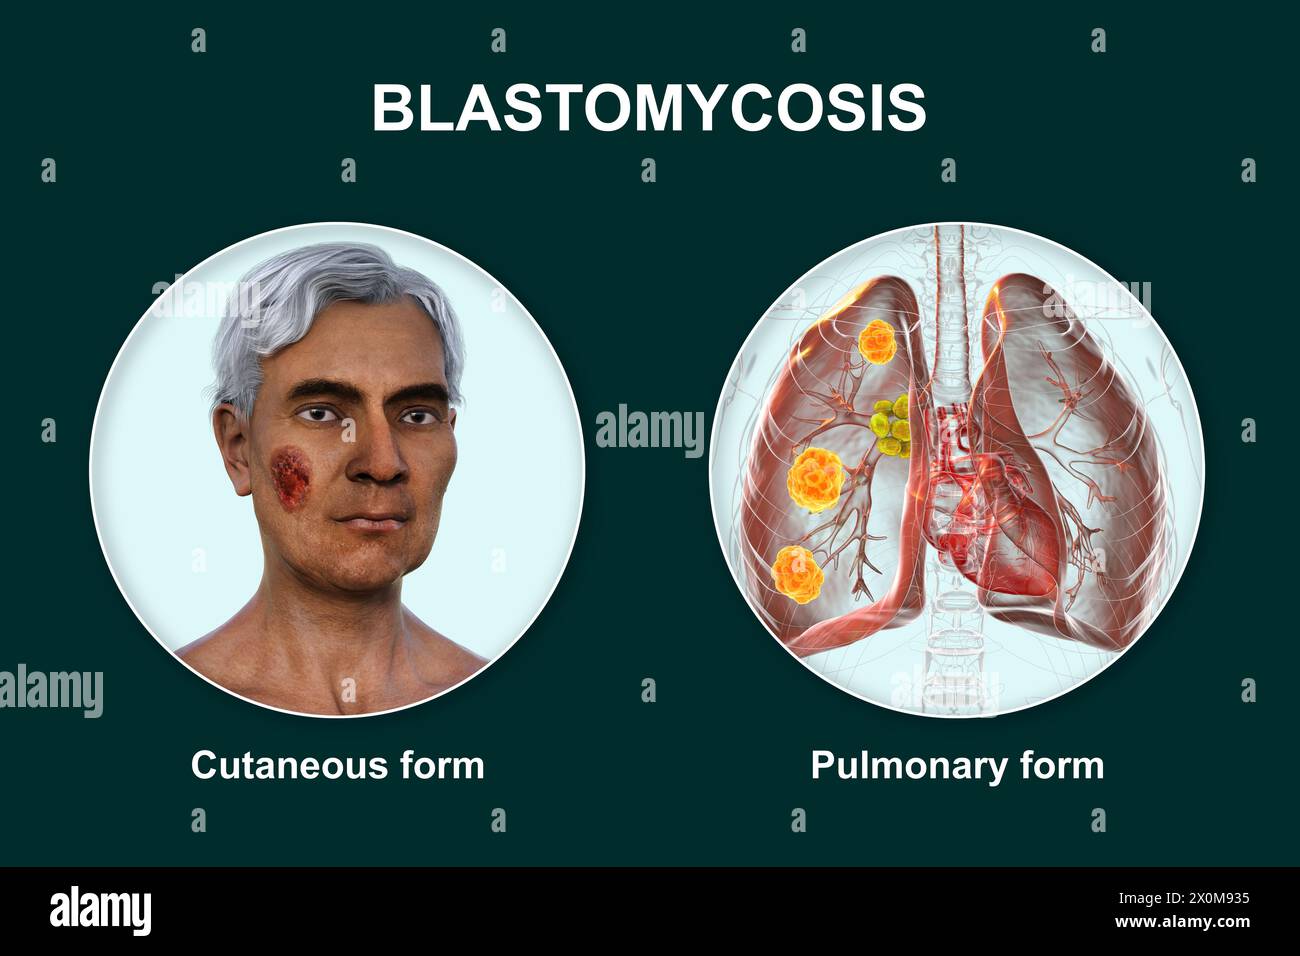 Illustrazione 3D che mostra due presentazioni cliniche della blastomicosi: Cutanea (che colpisce la pelle) e polmonare (che colpisce i polmoni). Blastomicosi Foto Stock